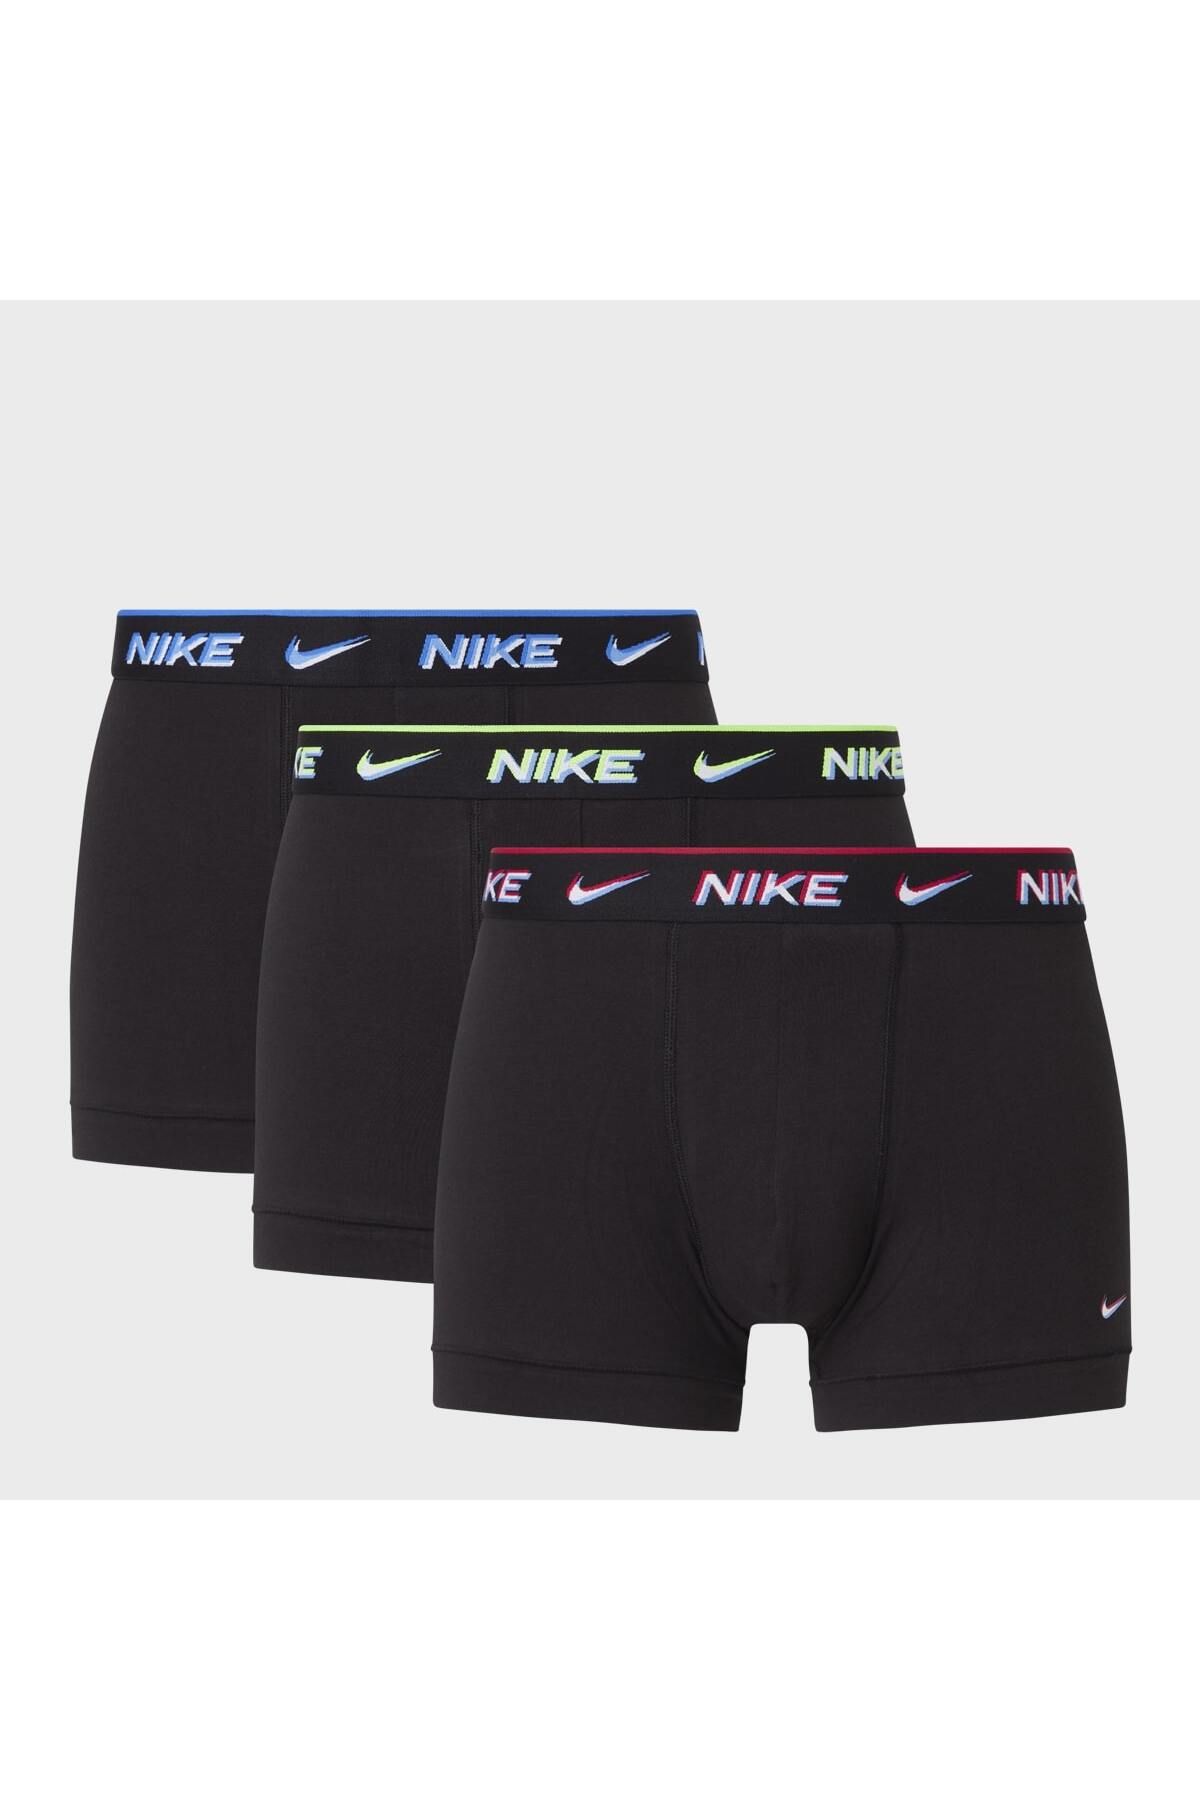 Nike Erkek Nike Marka Logolu Elastik Bantlı Günlük Kullanıma Uygun Siyah Boxer 0000ke1008-bav